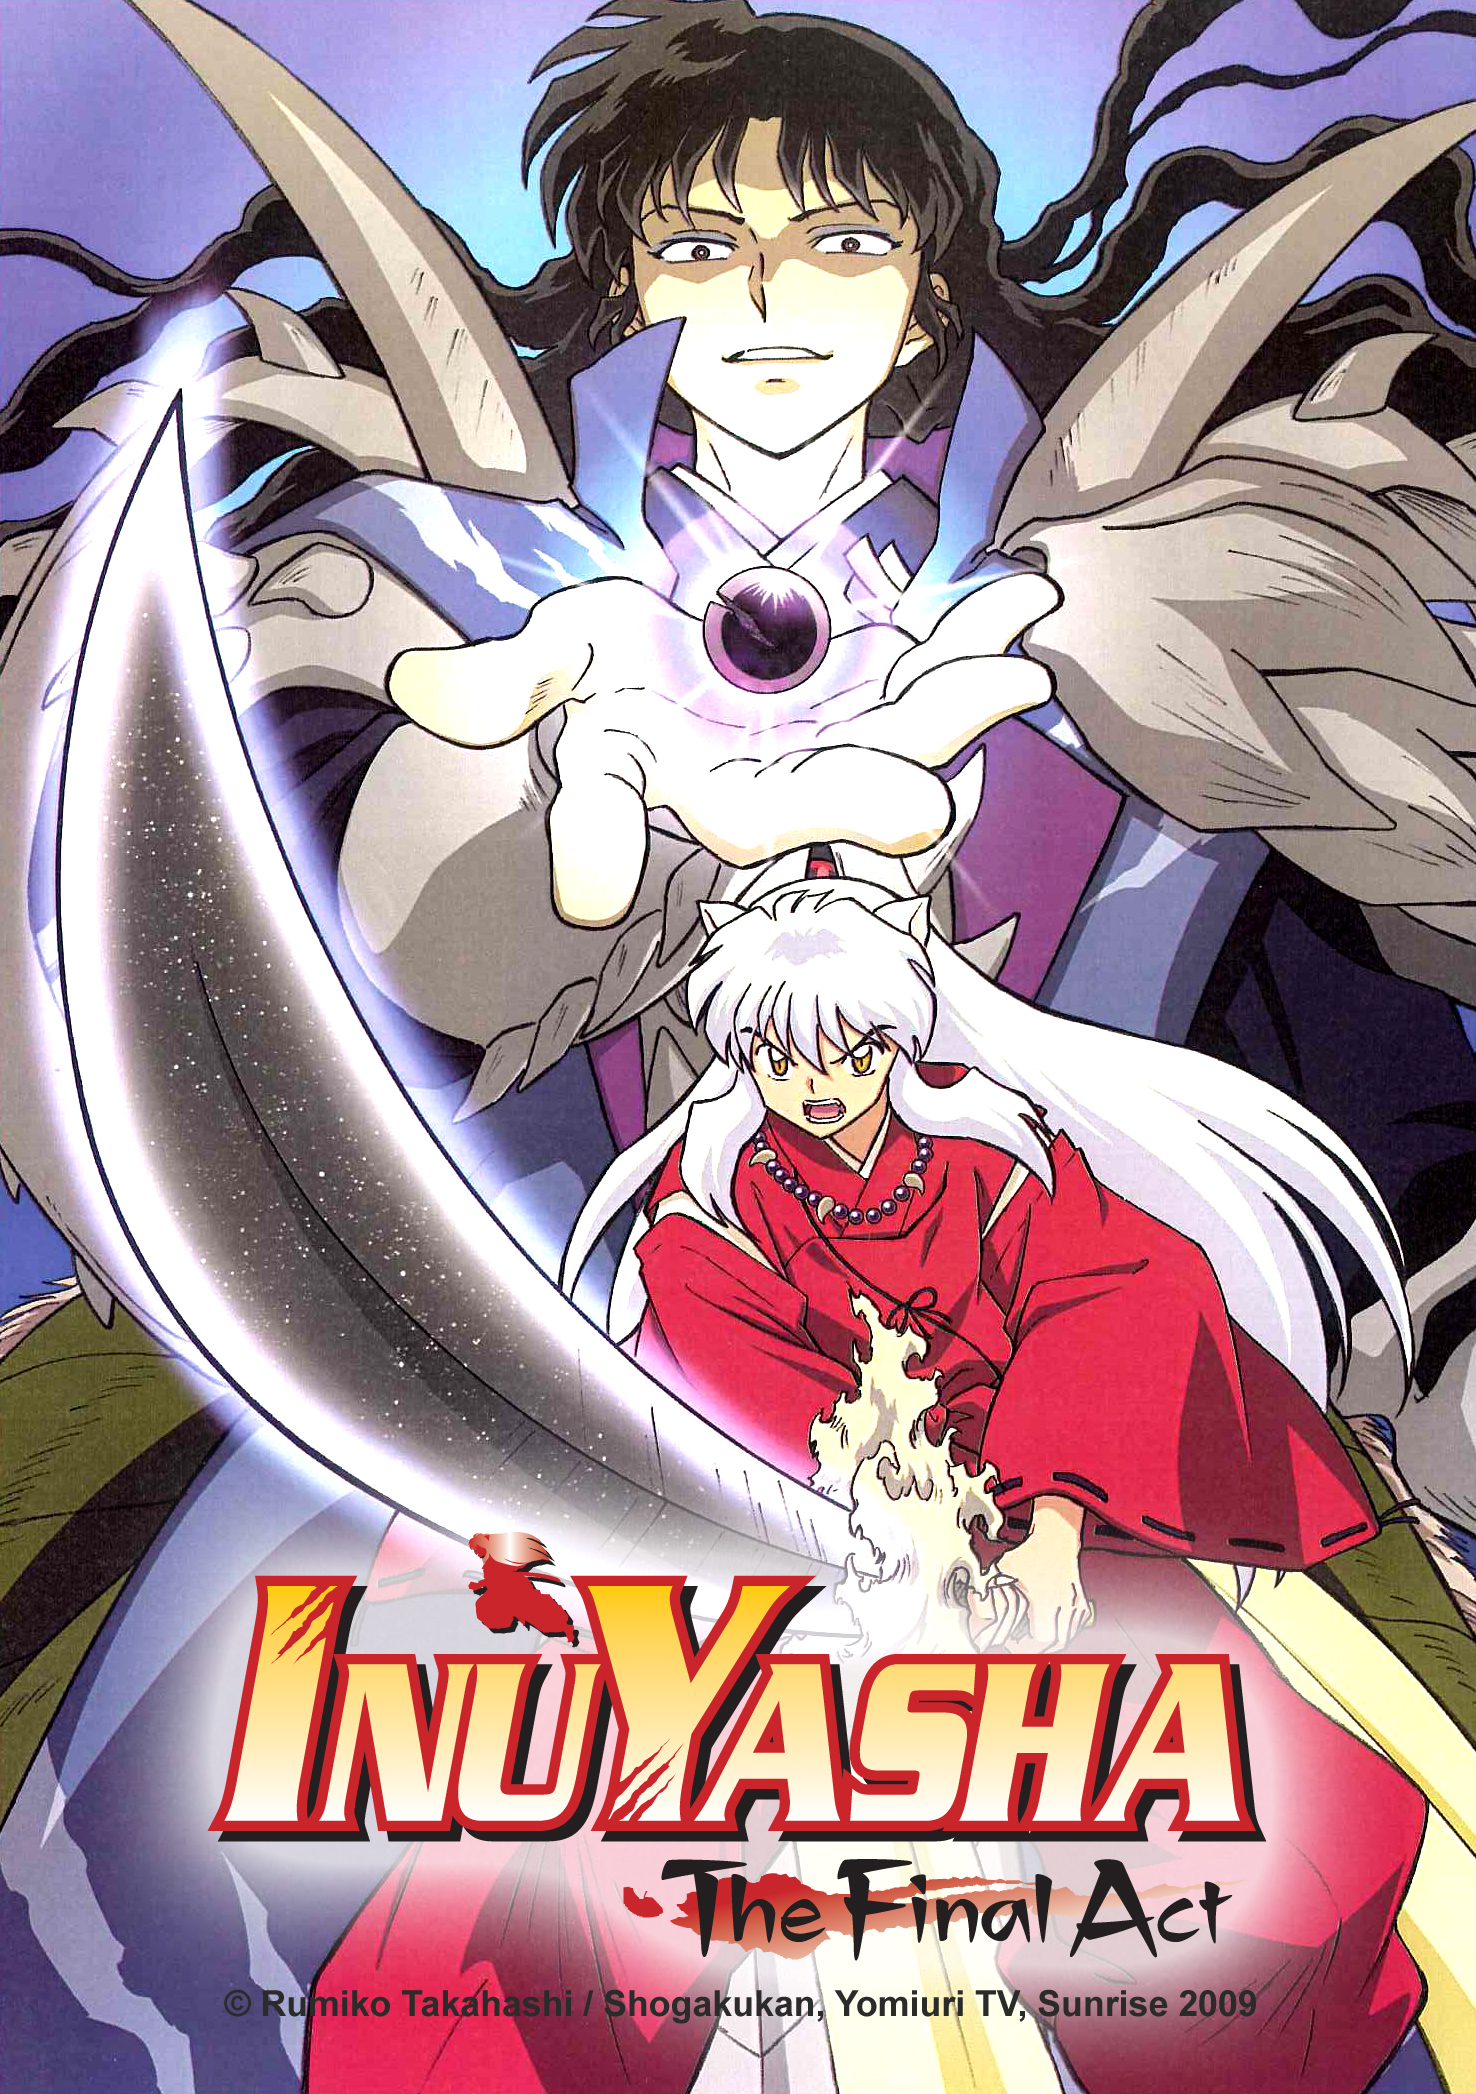 Inuyasha Episodes 136 - 140